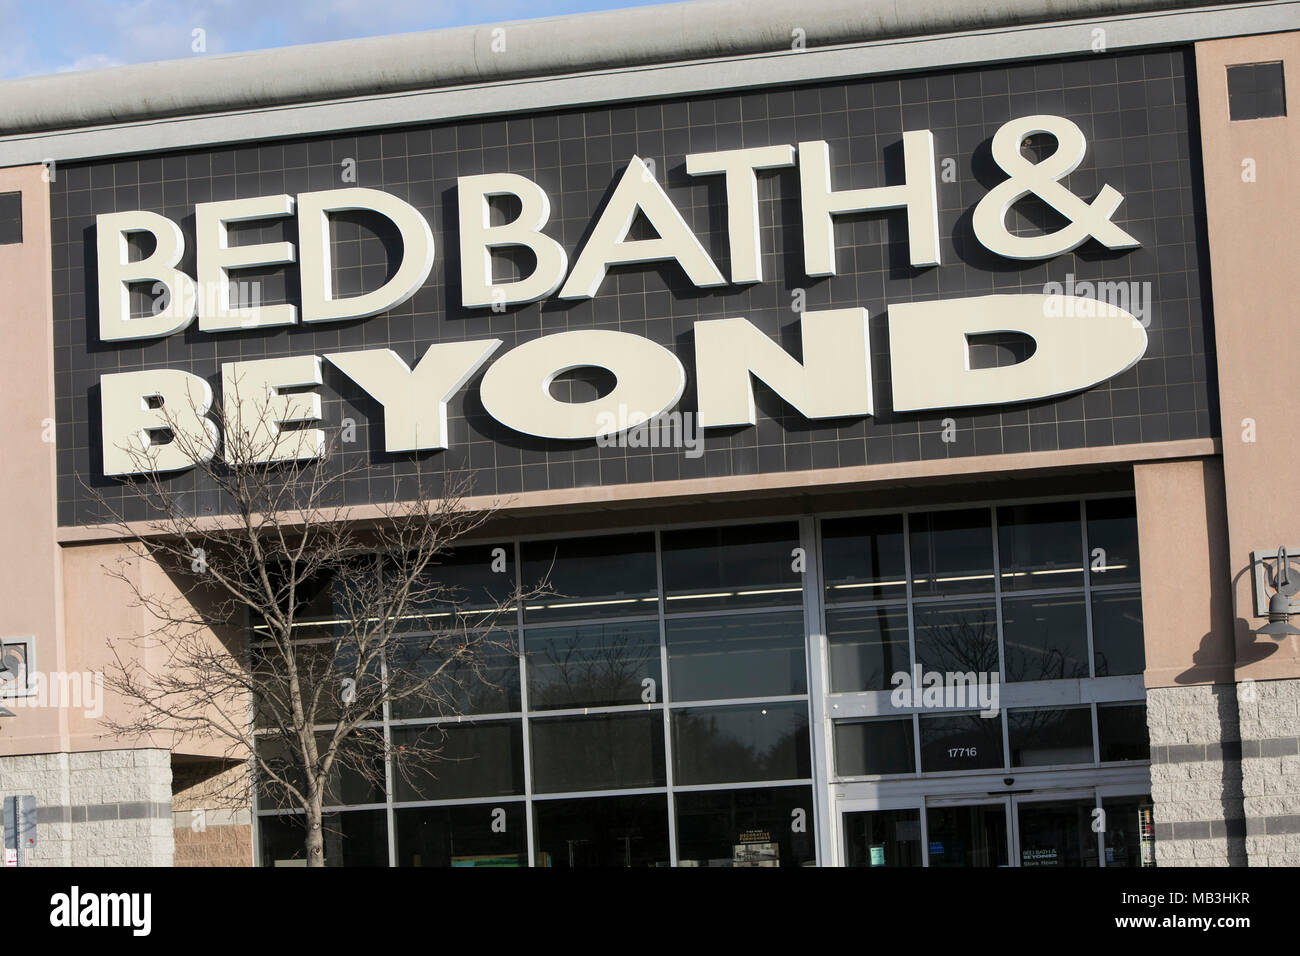 Un Bed Bath & Beyond vu le logo sur un magasin de détail/de Hagerstown, Maryland le 5 avril 2018. Banque D'Images